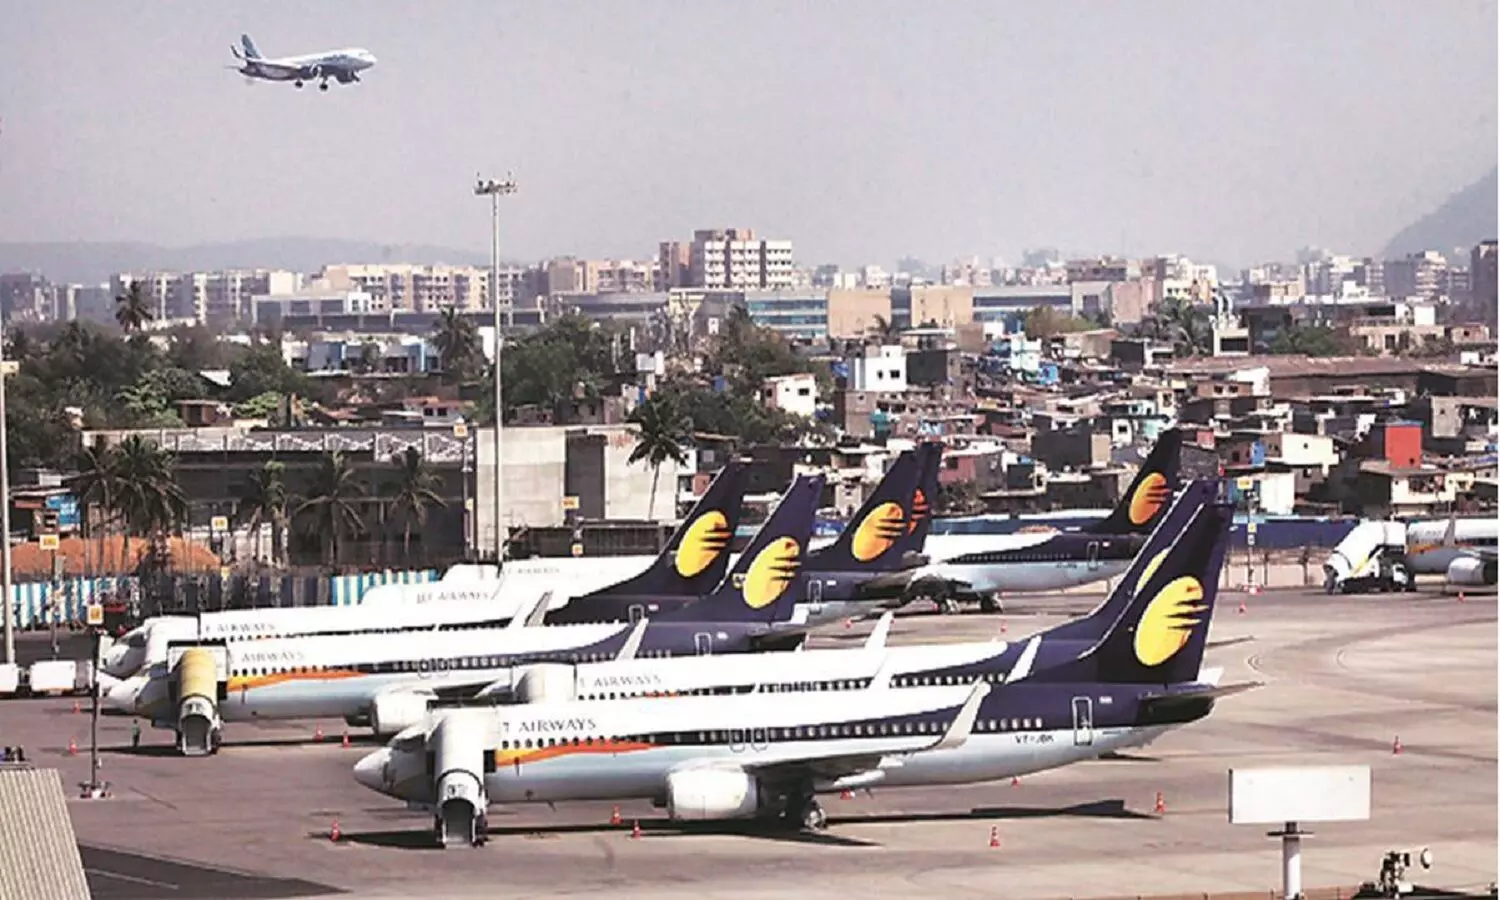 भारत में सस्ती होगी हवाई यात्रा, सरकार टिकट में लगने वाले कैप को हटाएगी, एयरलाइन खुद से रेट तय करेंगी